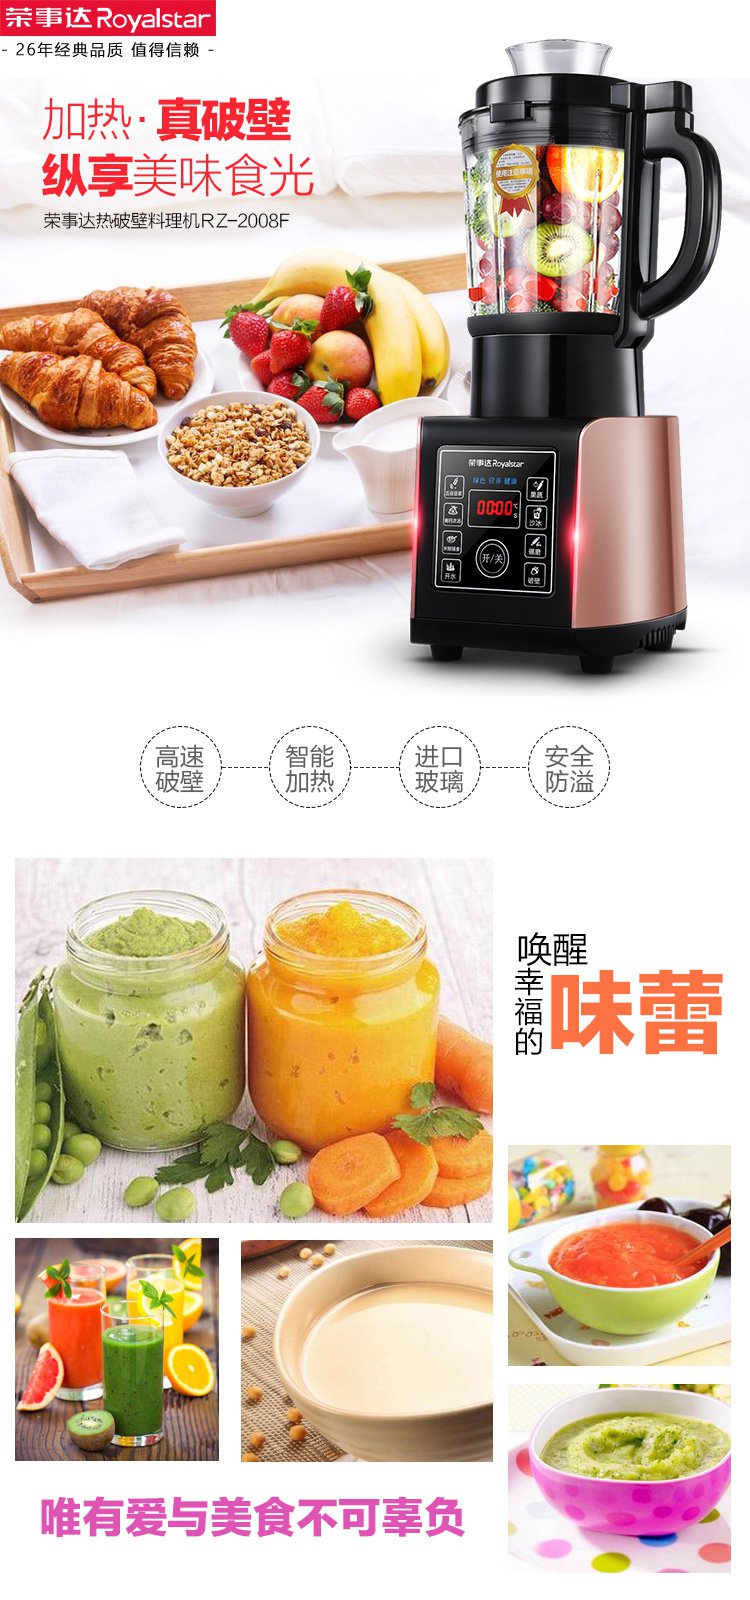 荣事达rz-2008f家用智能加热全自动多功能料理机豆浆机果汁机婴儿辅食